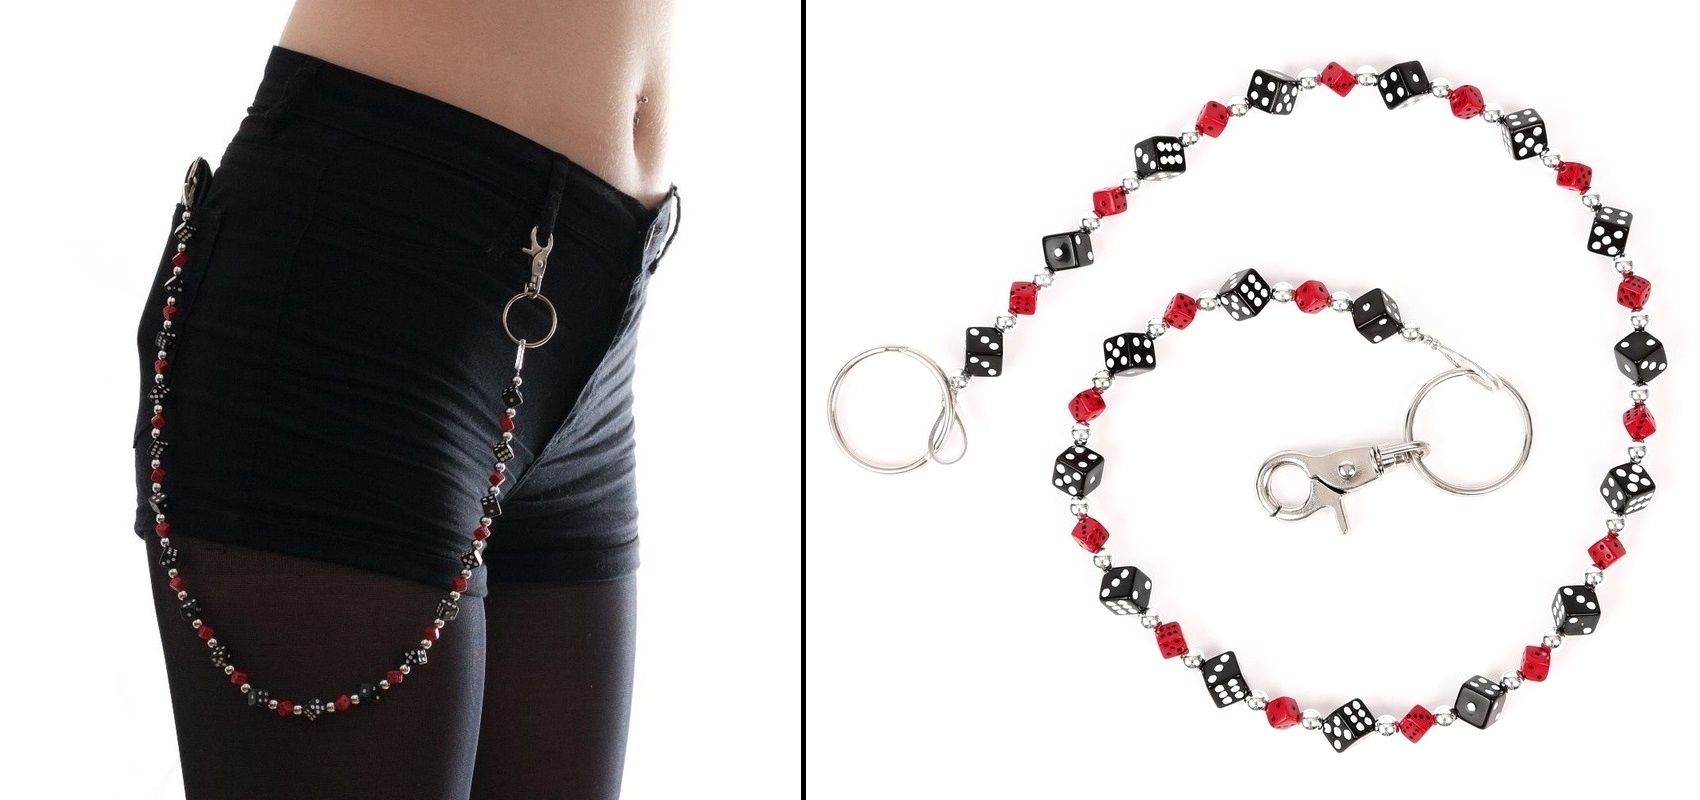 Řetěz na kalhoty s černými a červenými kostkami